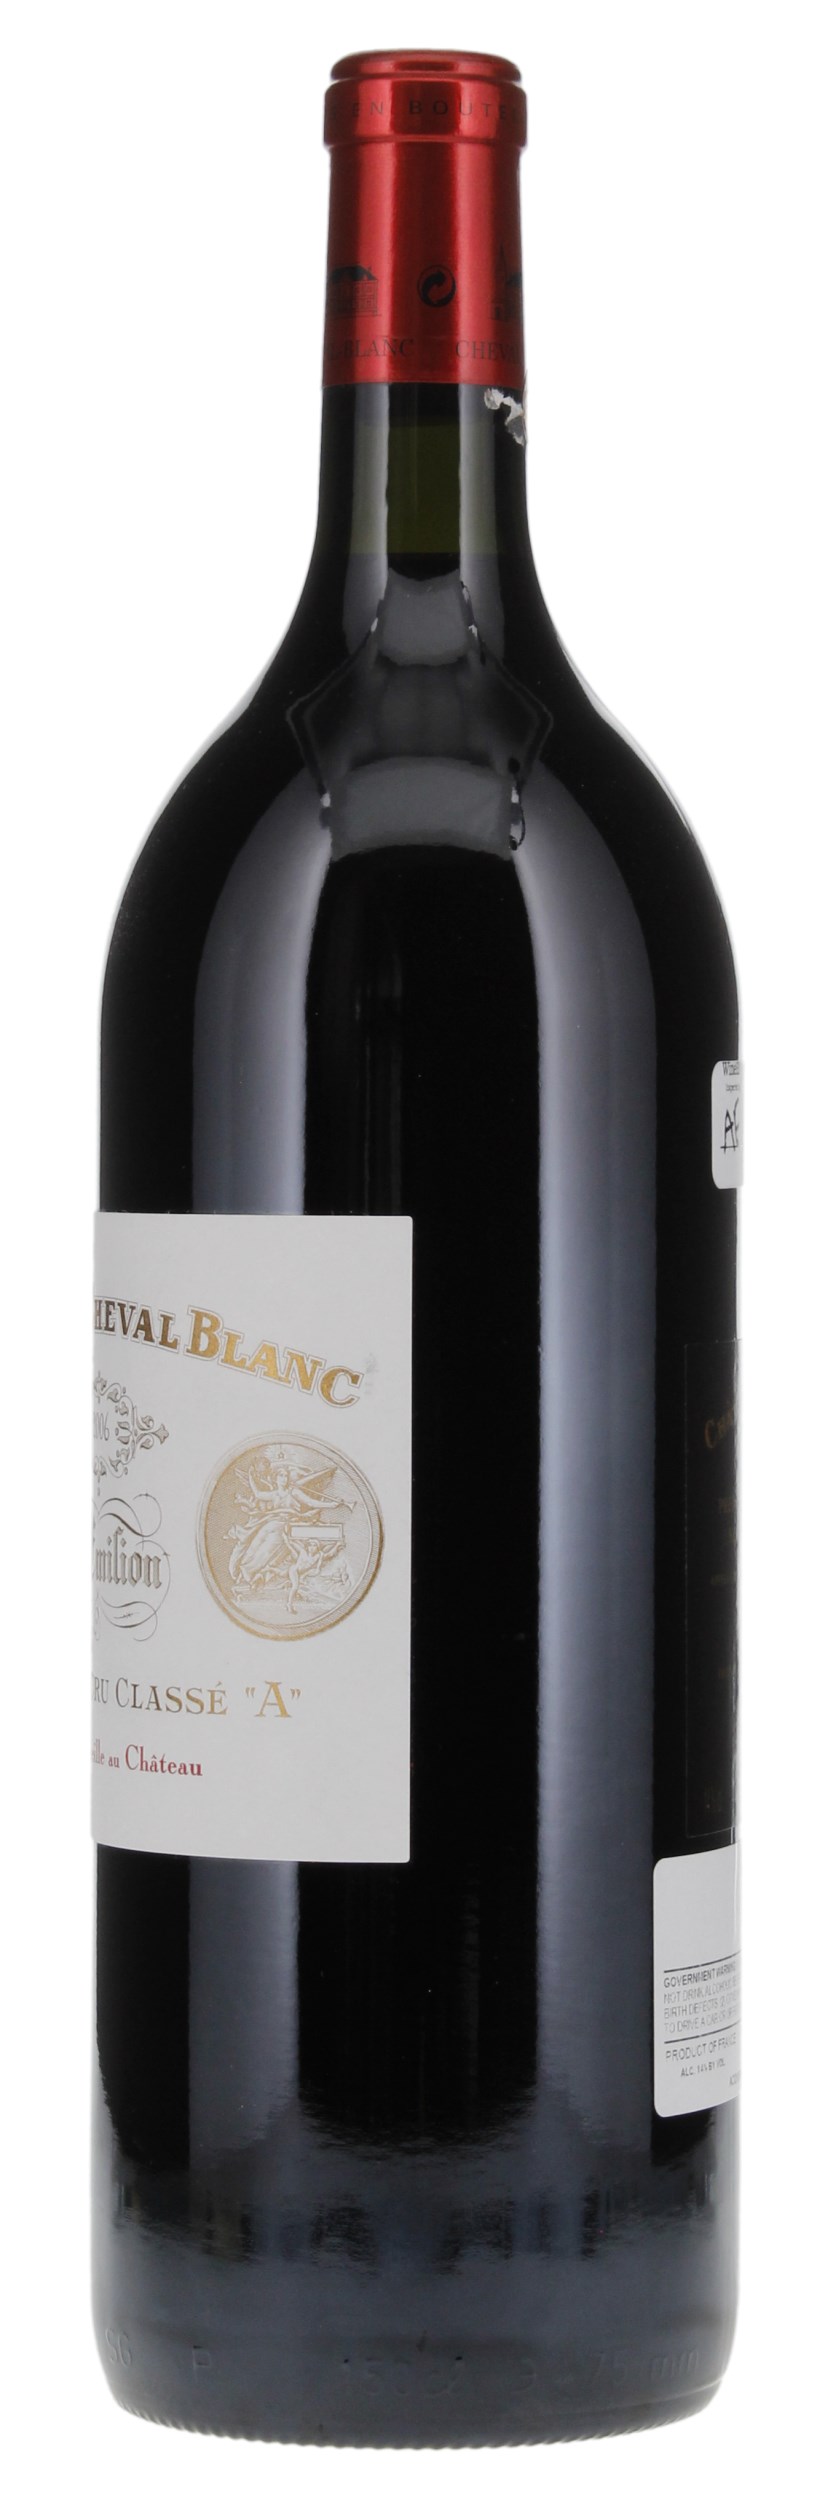 2006 Château Cheval-Blanc, 1.5ltr